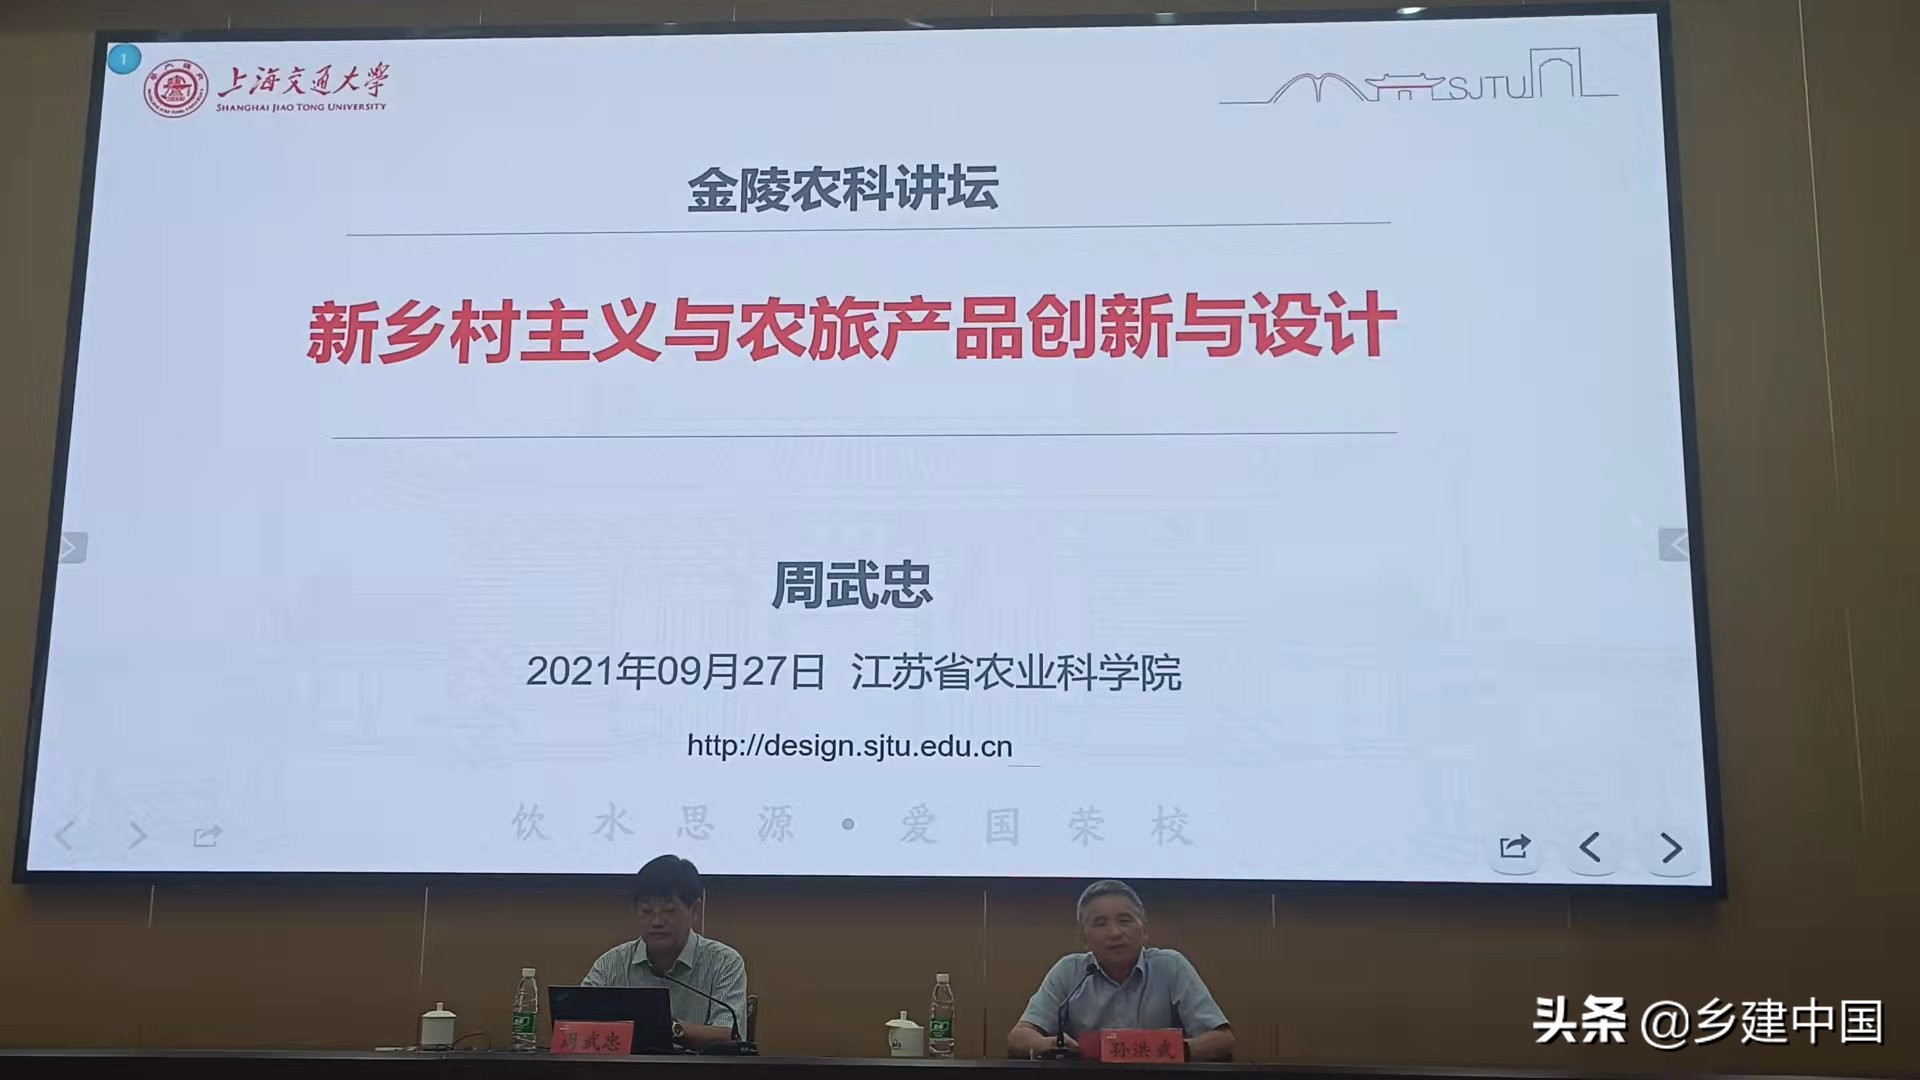 上海交通大学设计学院周武忠教授做客第三十期金陵农科讲坛